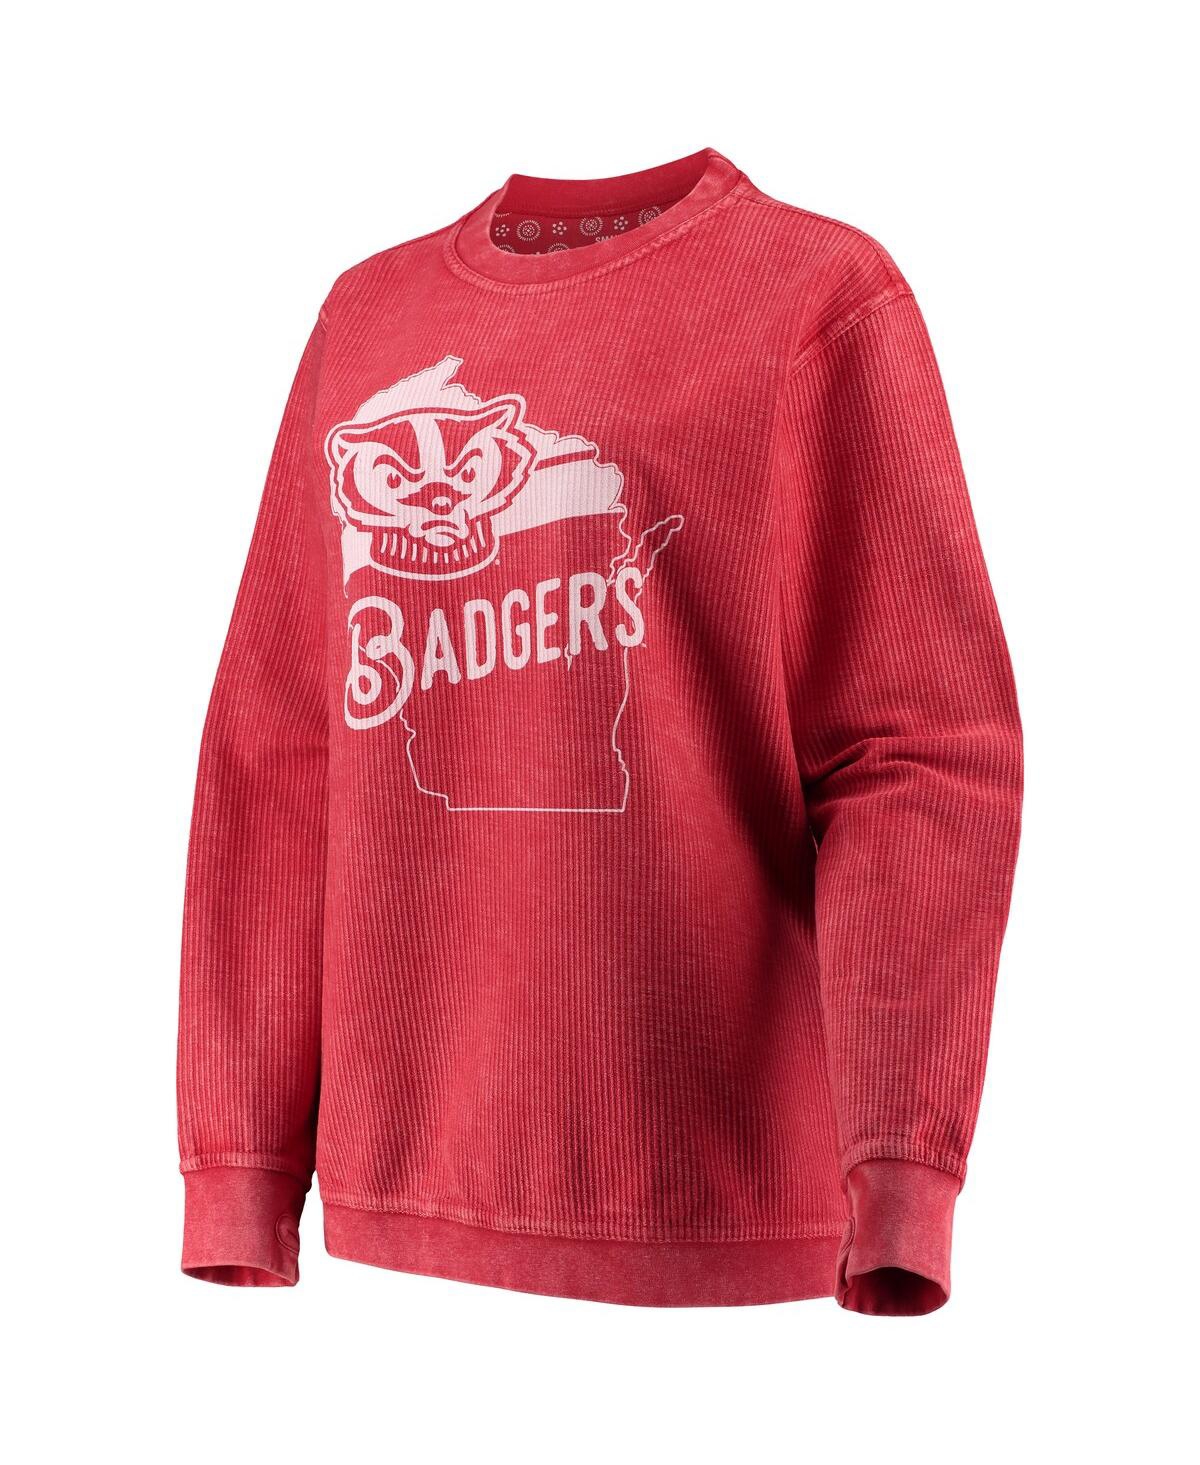 Shop Pressbox Women's  Red Wisconsin Badgers Comfy Cord Corduroy Crewneck Sweatshirt